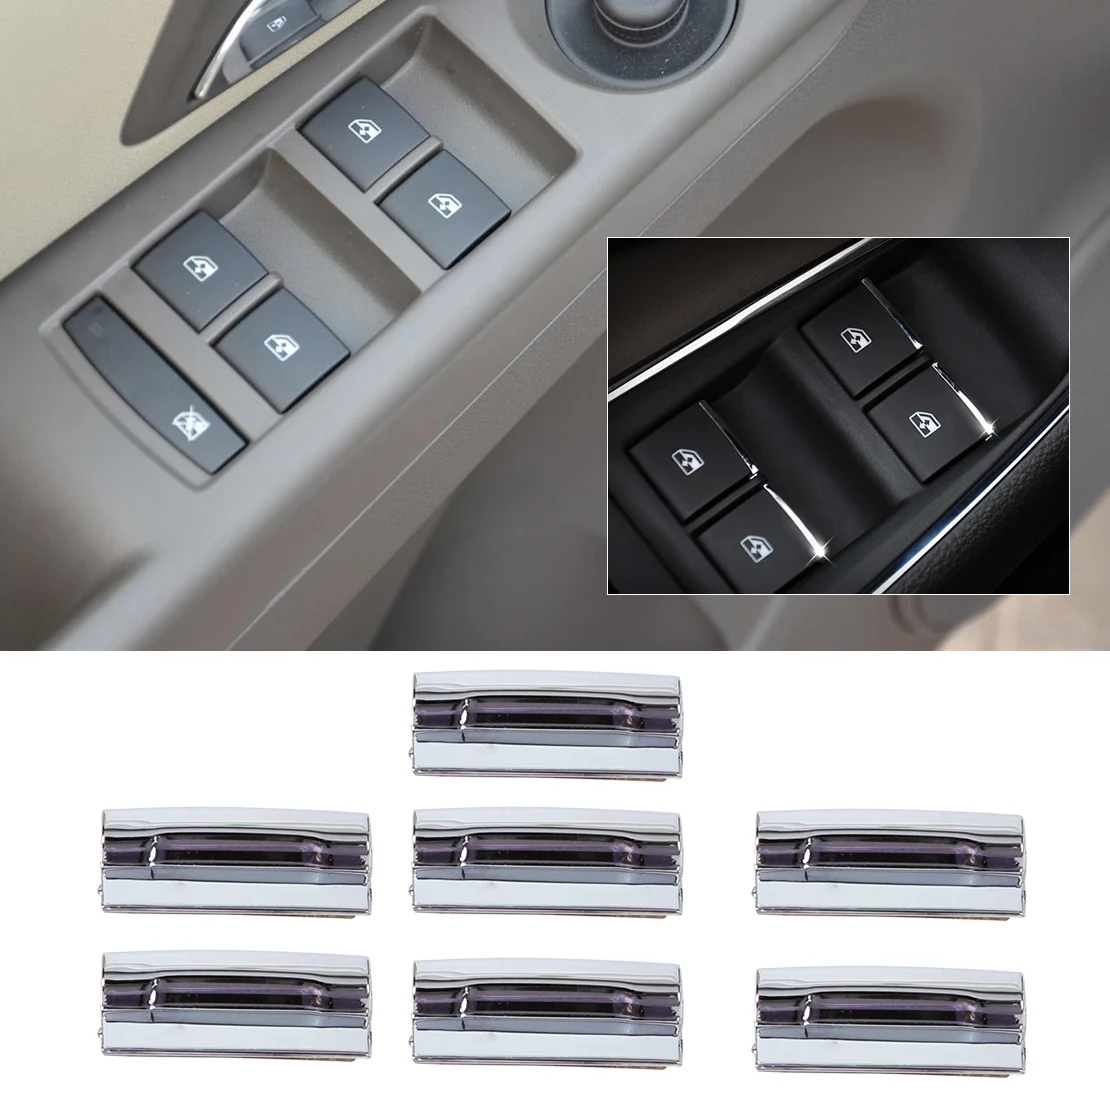 Dwcx автомобиль-Стайлинг 7 шт. chrome двери, окна переключатель подъема и пуговицы Крышка Накладка для Chevrolet Cruze Malibu 2012 2013 2014